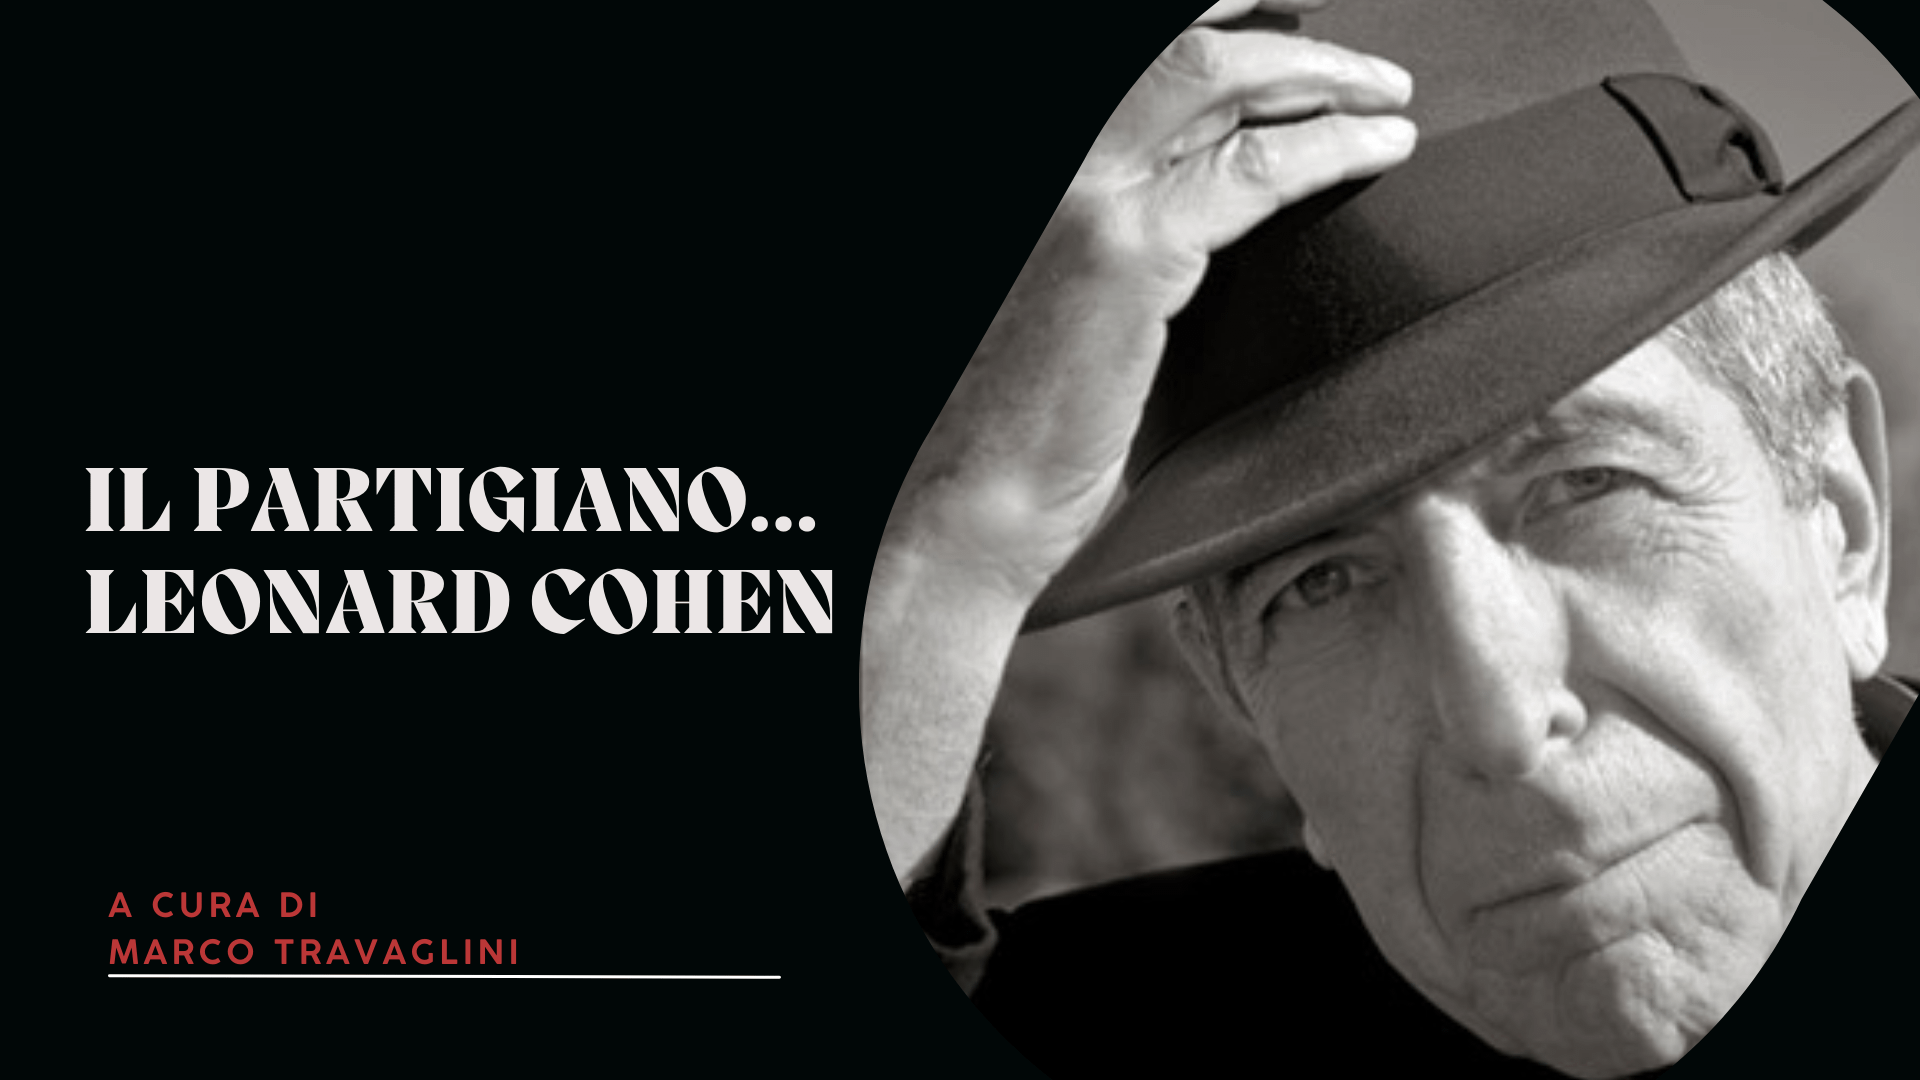 Il partigiano... Leonard Cohen